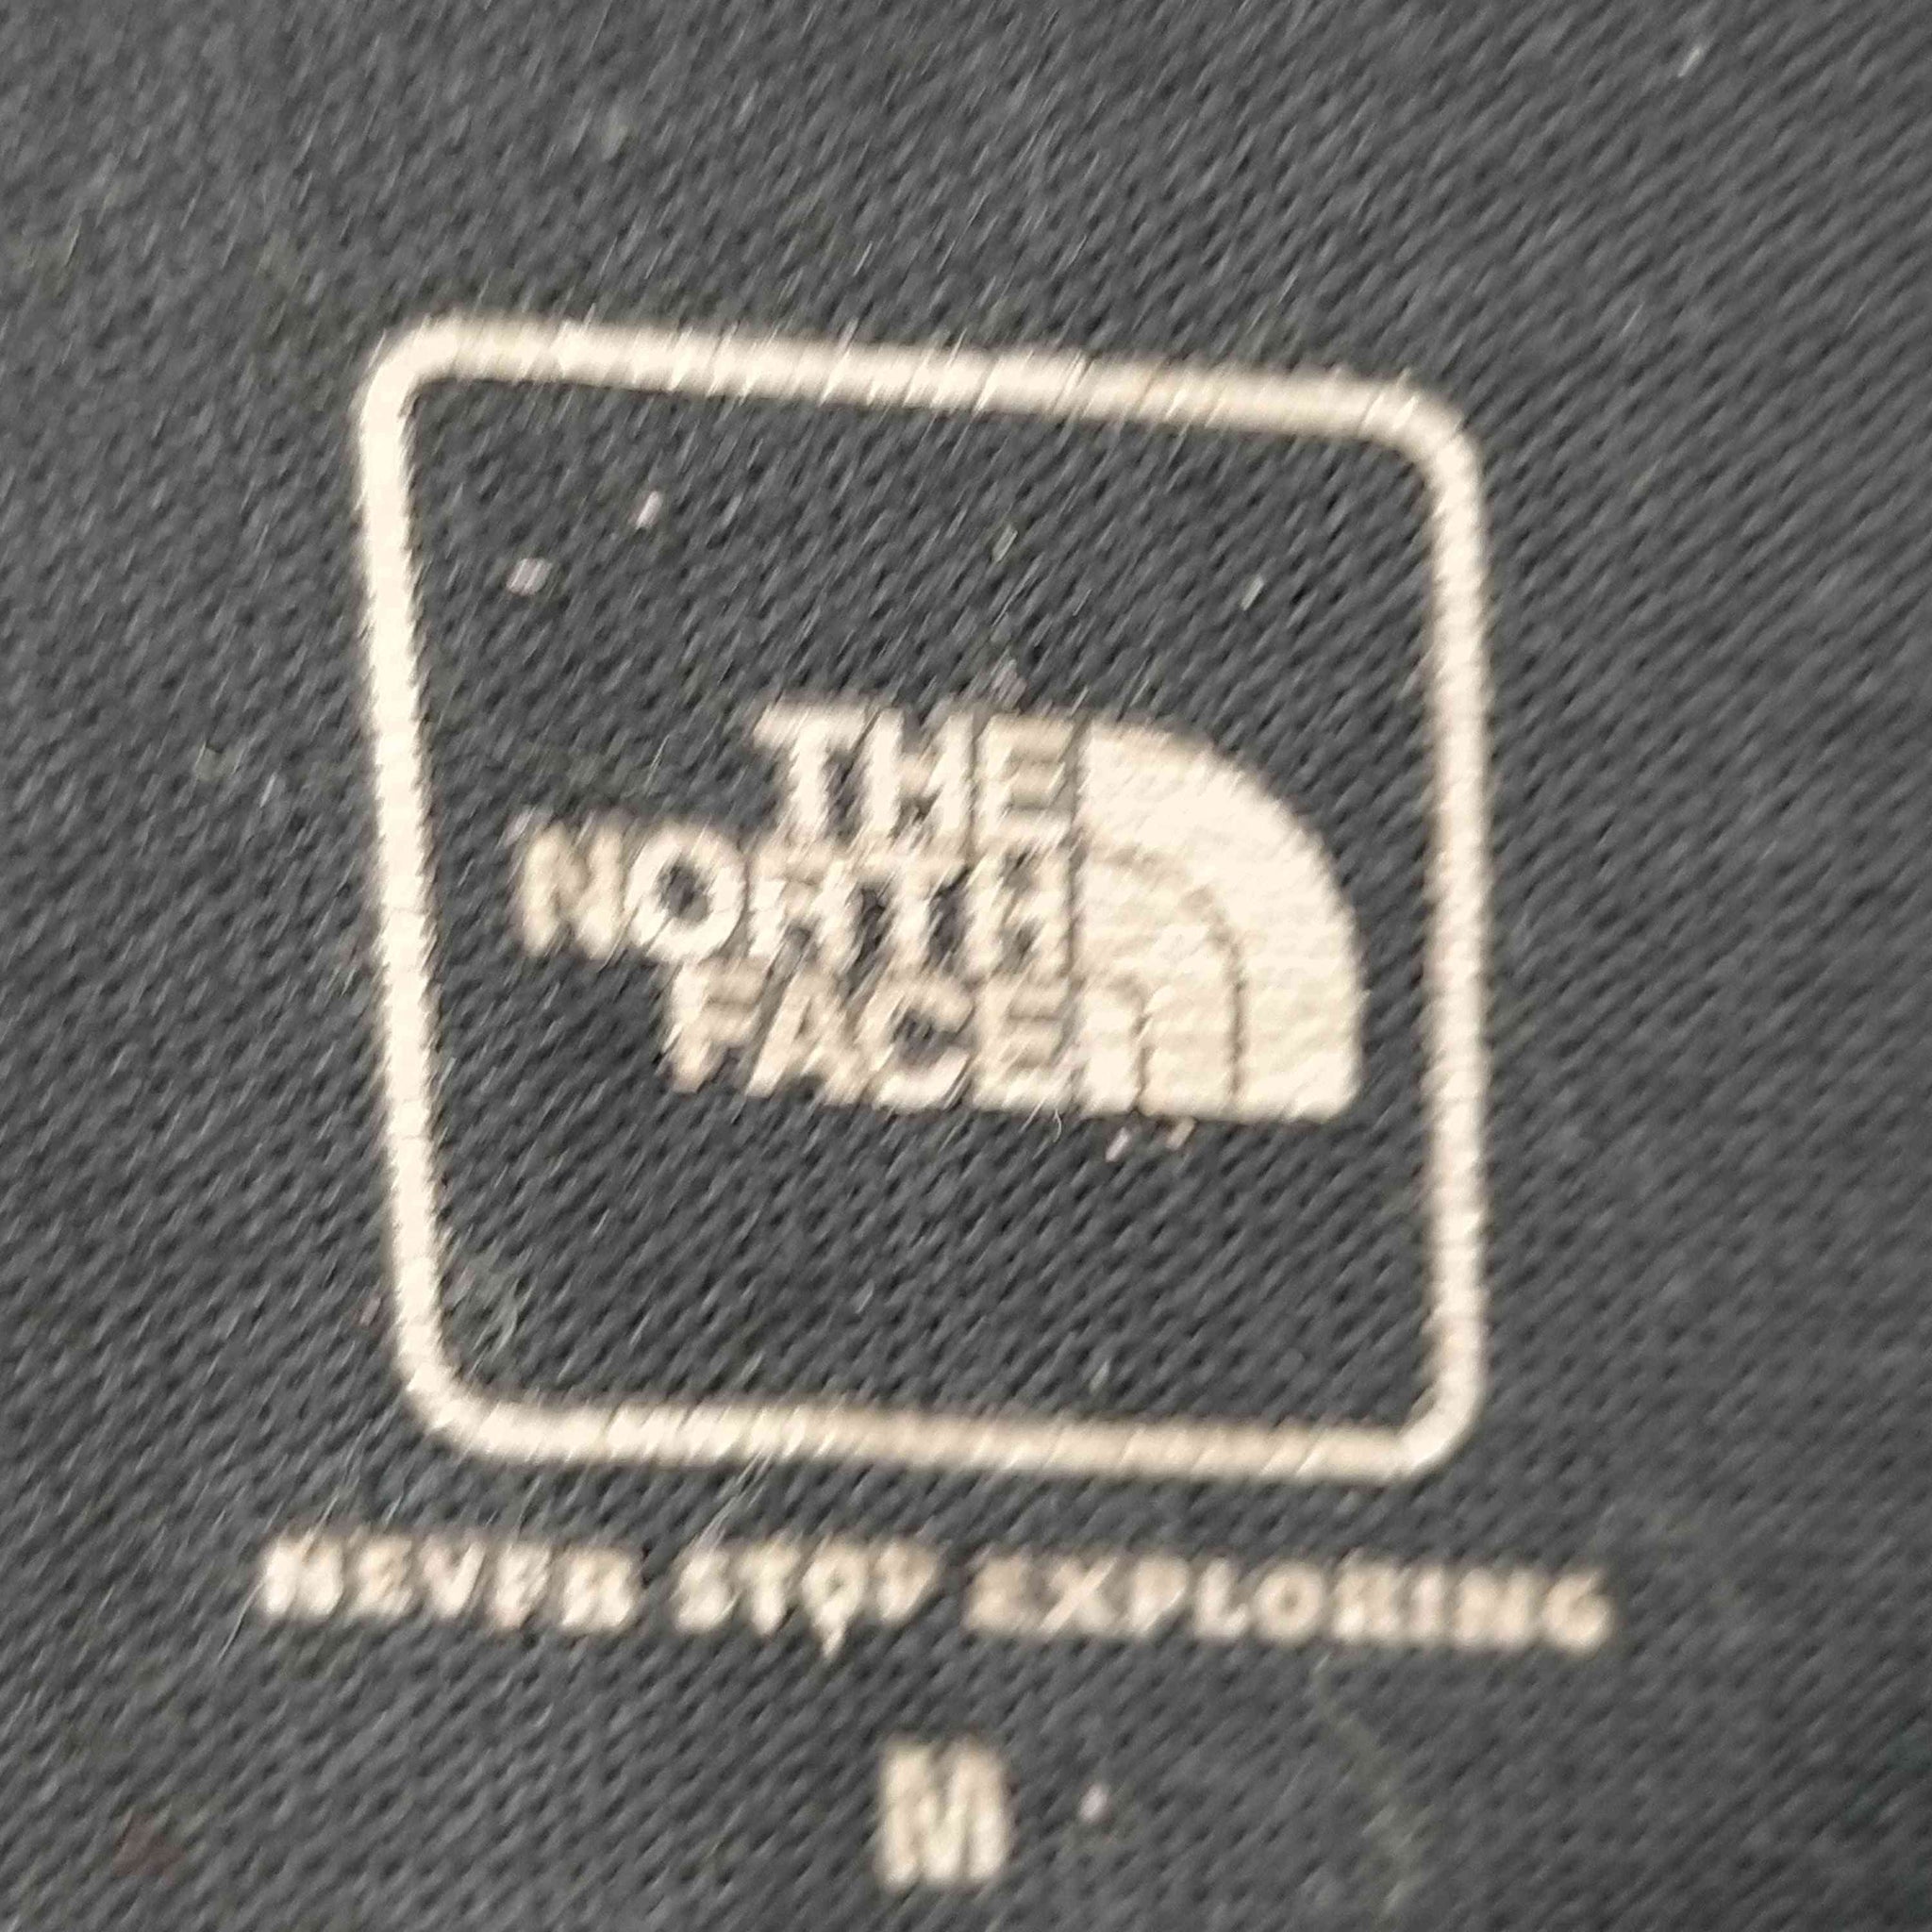 THE NORTH FACE(ザノースフェイス)S/S Pocket Teeショートスリーブポケットティーシャツ